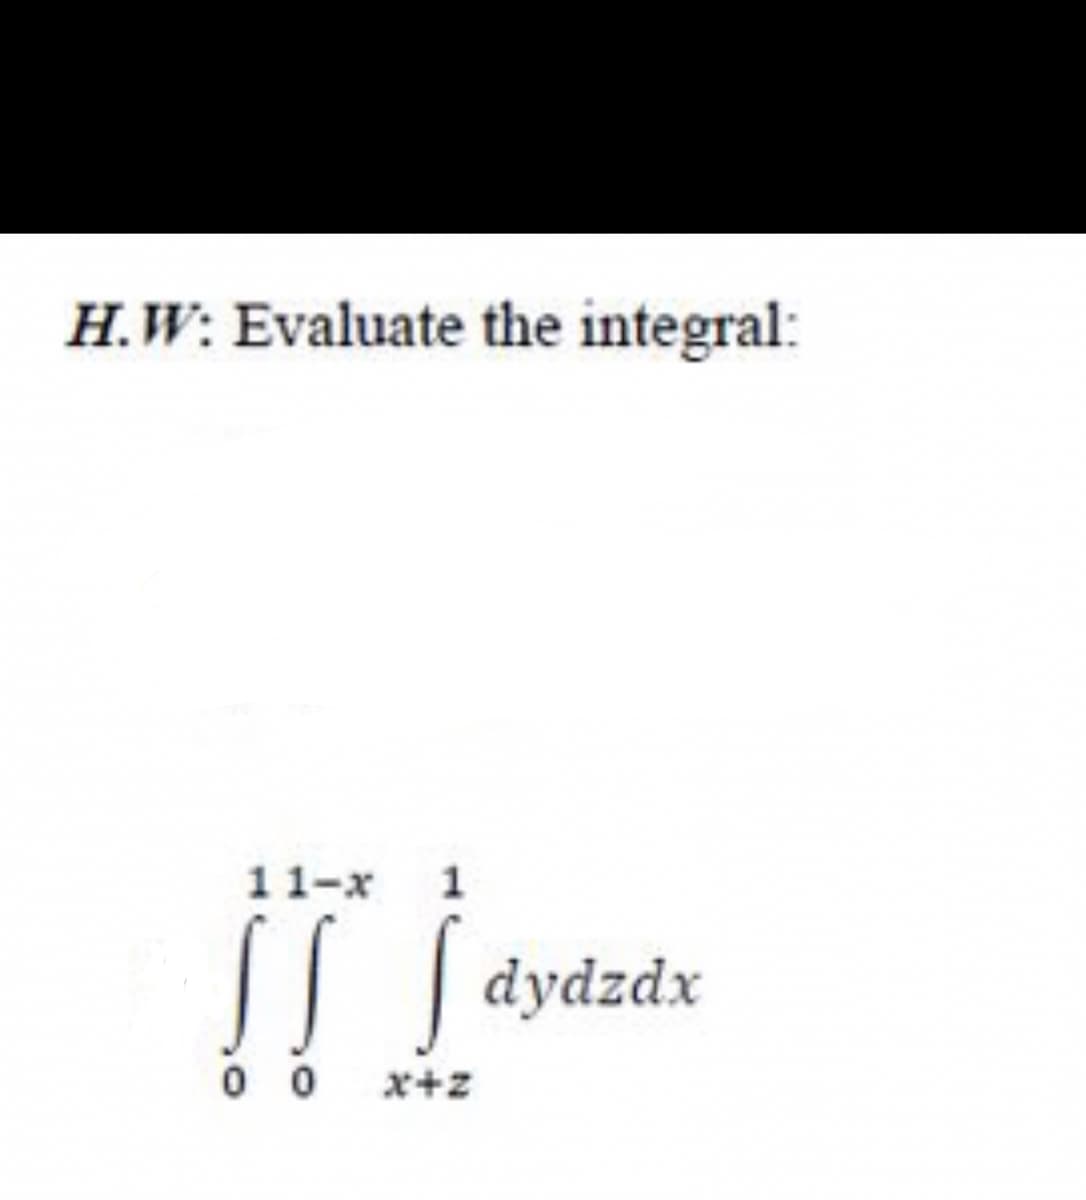 H.W: Evaluate the integral:
11-x
|| | dydzdx
0 0
x+z
